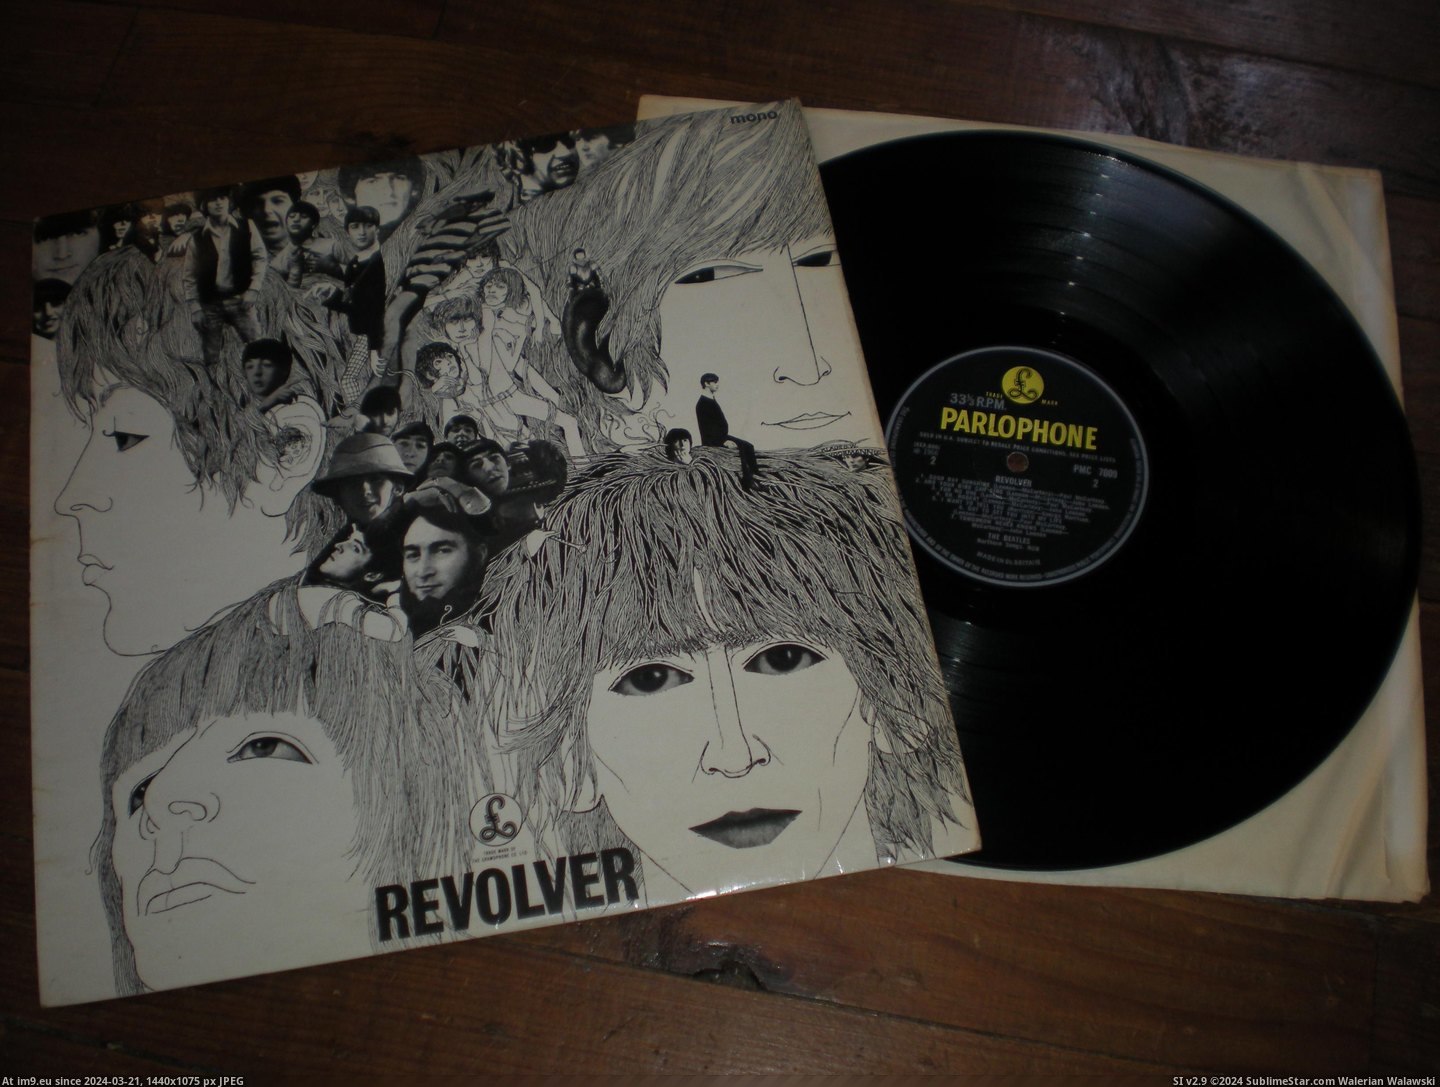  #Revolver  Revolver DR 5 Pic. (Bild von album new 1))